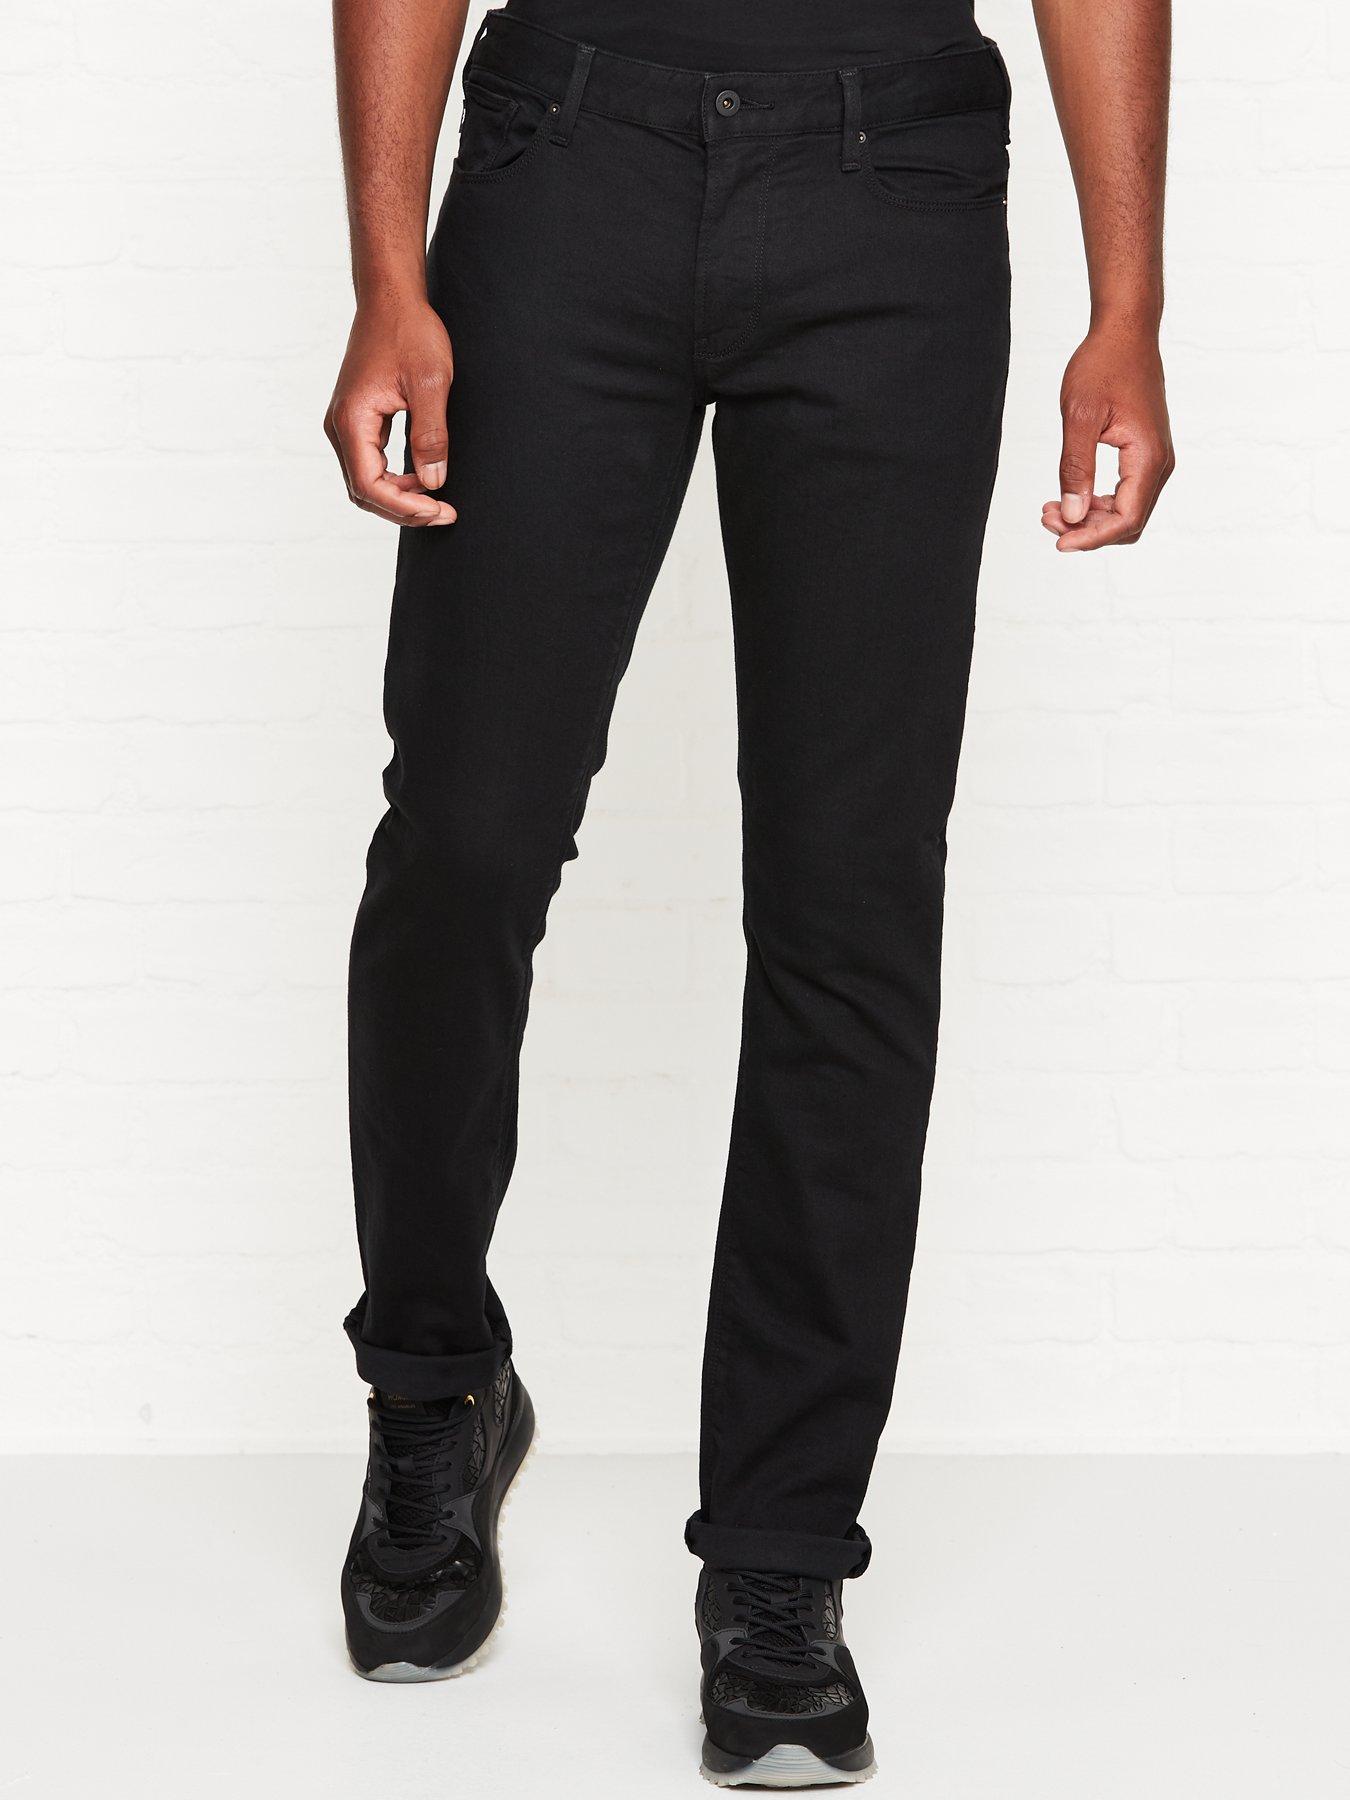 armani jeans j06 slim fit black